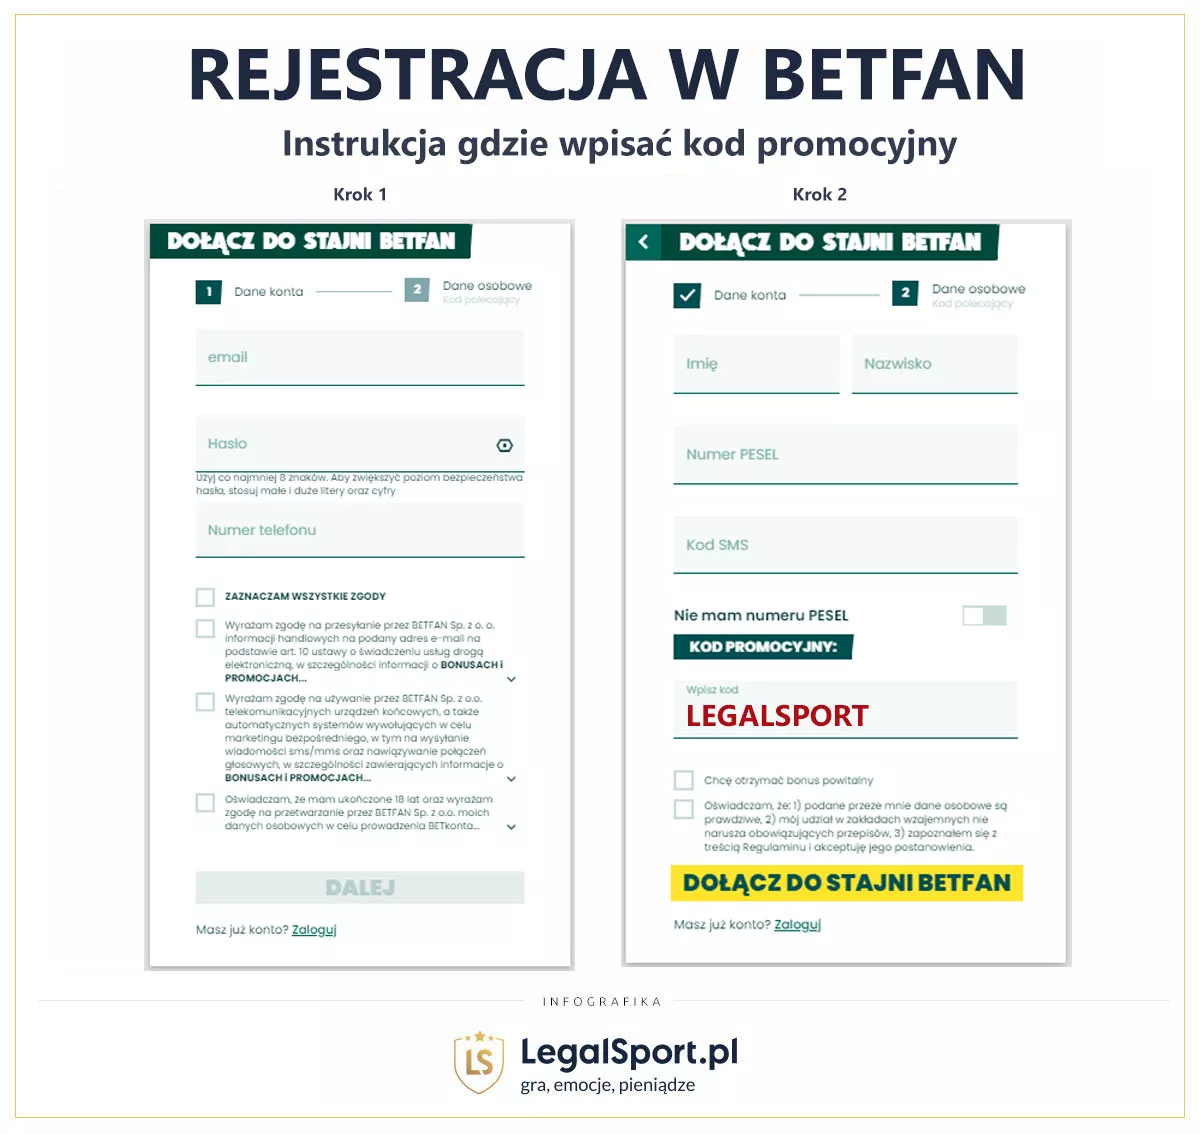 Betfan rejestracja - formularze w wypełnienia w kroku 1 i kroku 2